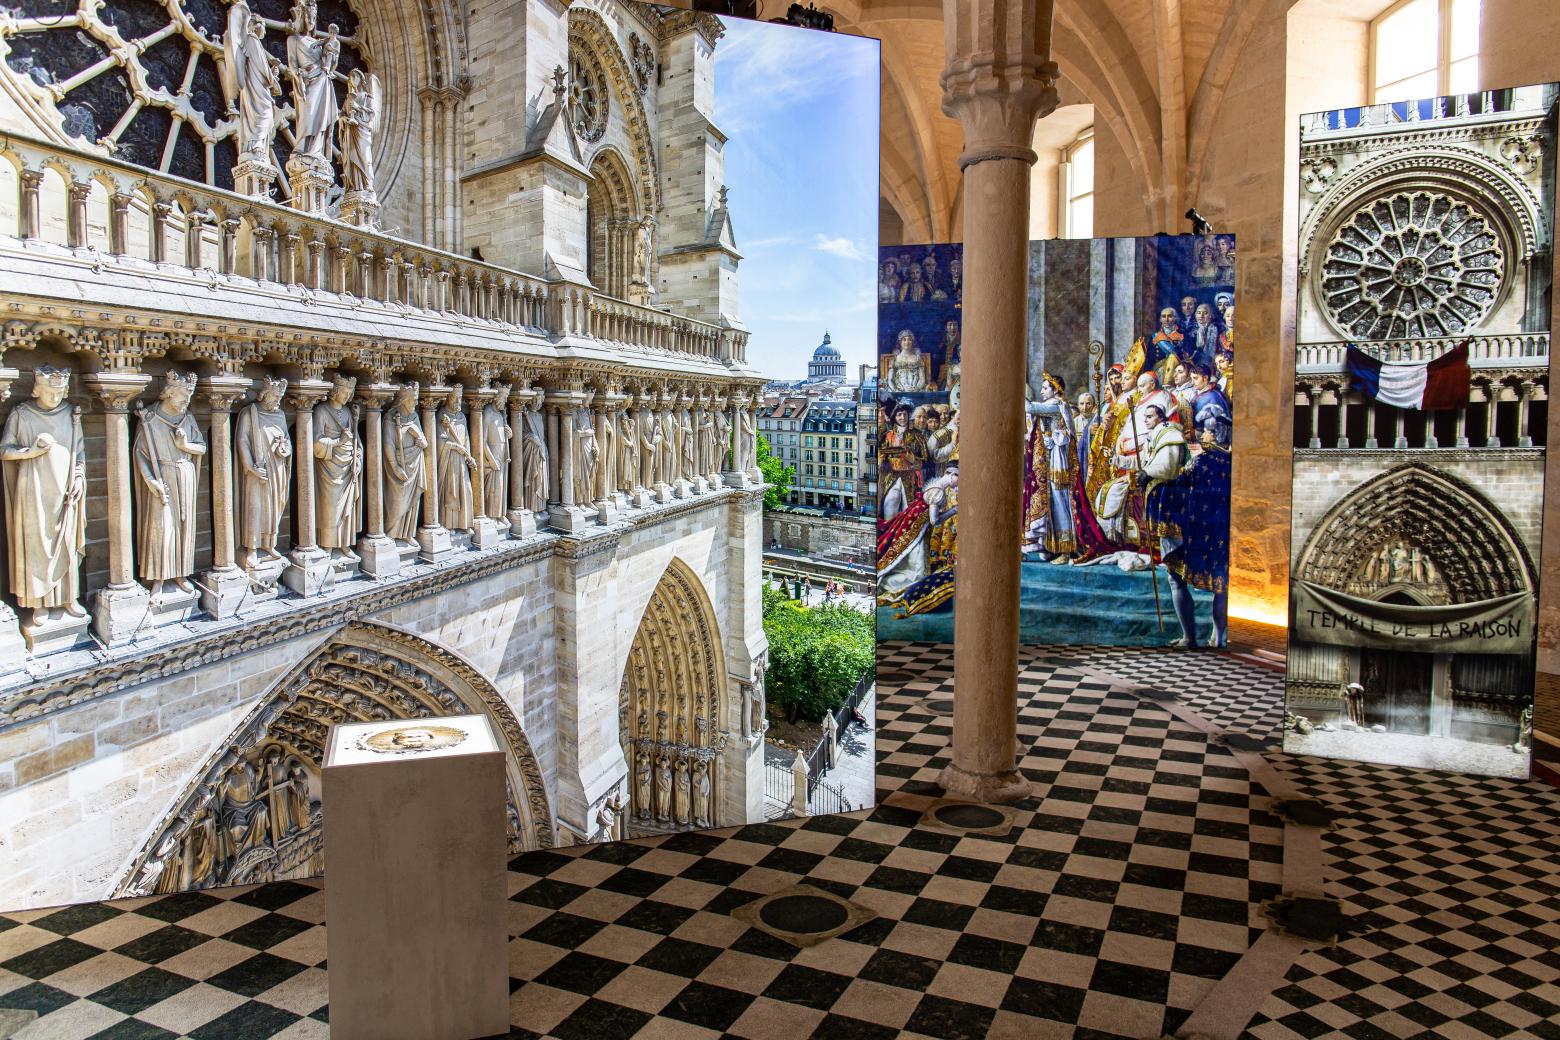 Blick in die Ausstellung "Notre Dame de Paris", Dresden, 2022